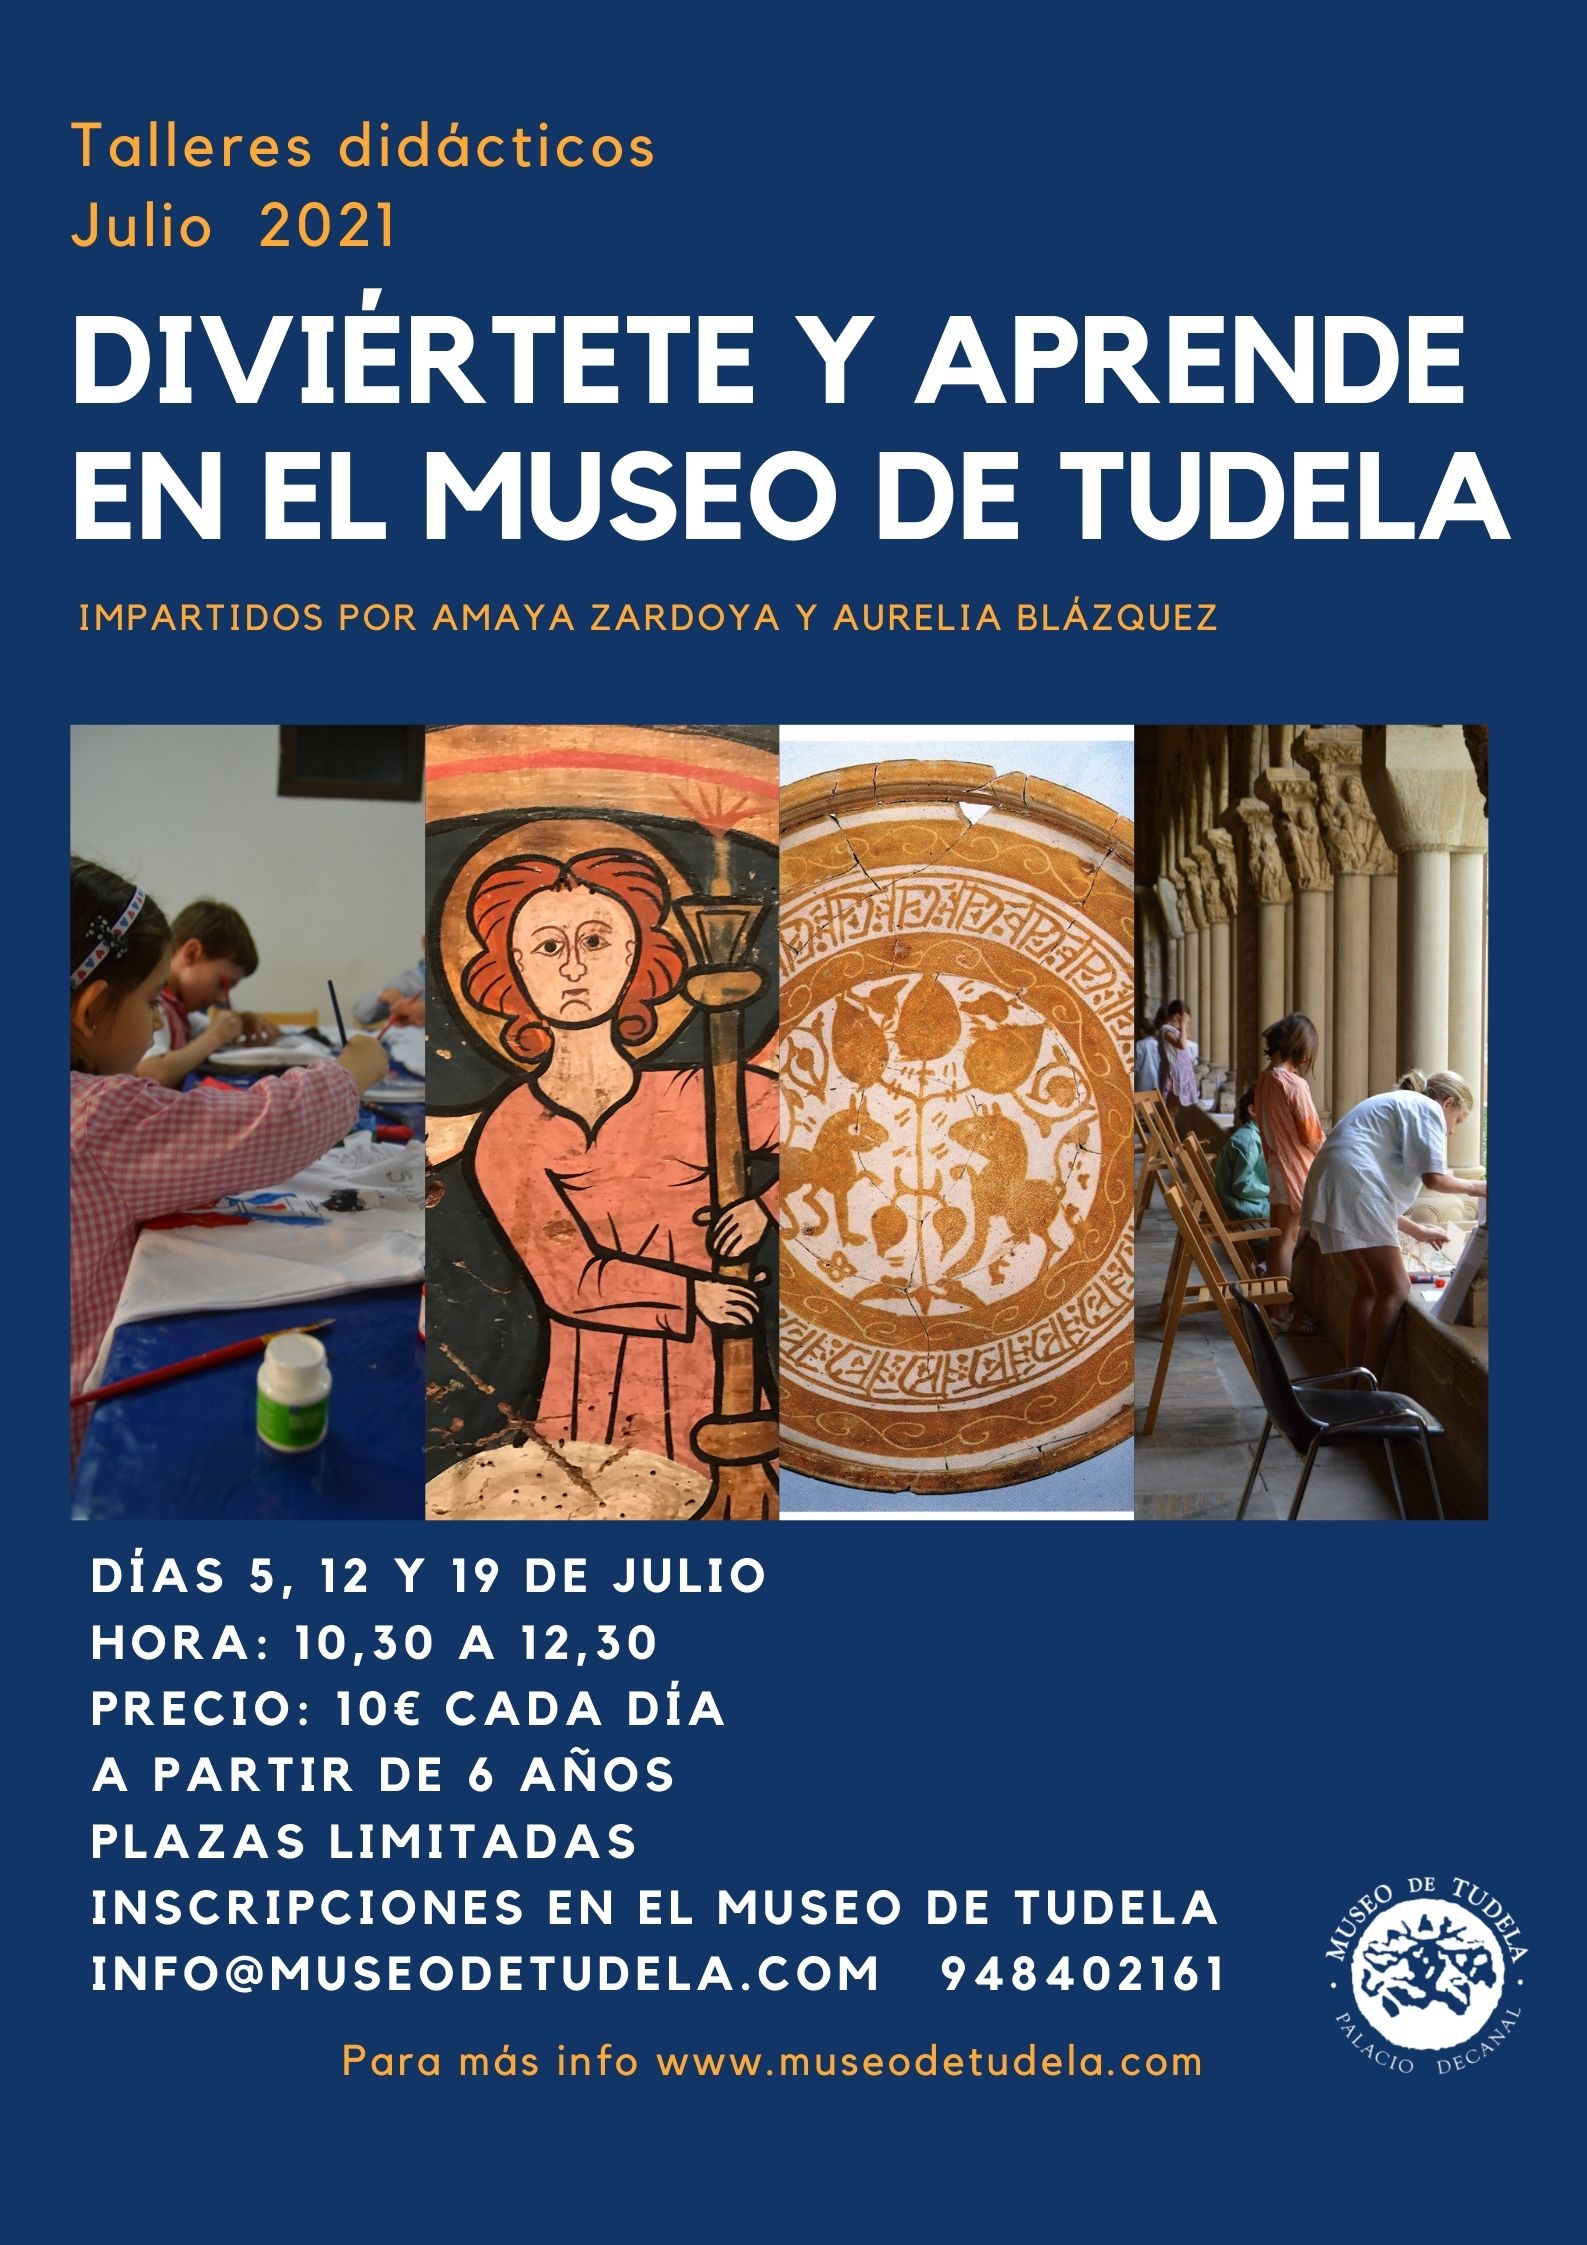 Cartel de los talleres didácticos del verano de 2021 que se realizarán en el museo de Tudela los días 5, 12 y 19 de julio por las mañanas. Para más información contactar con el museo de Tudela.